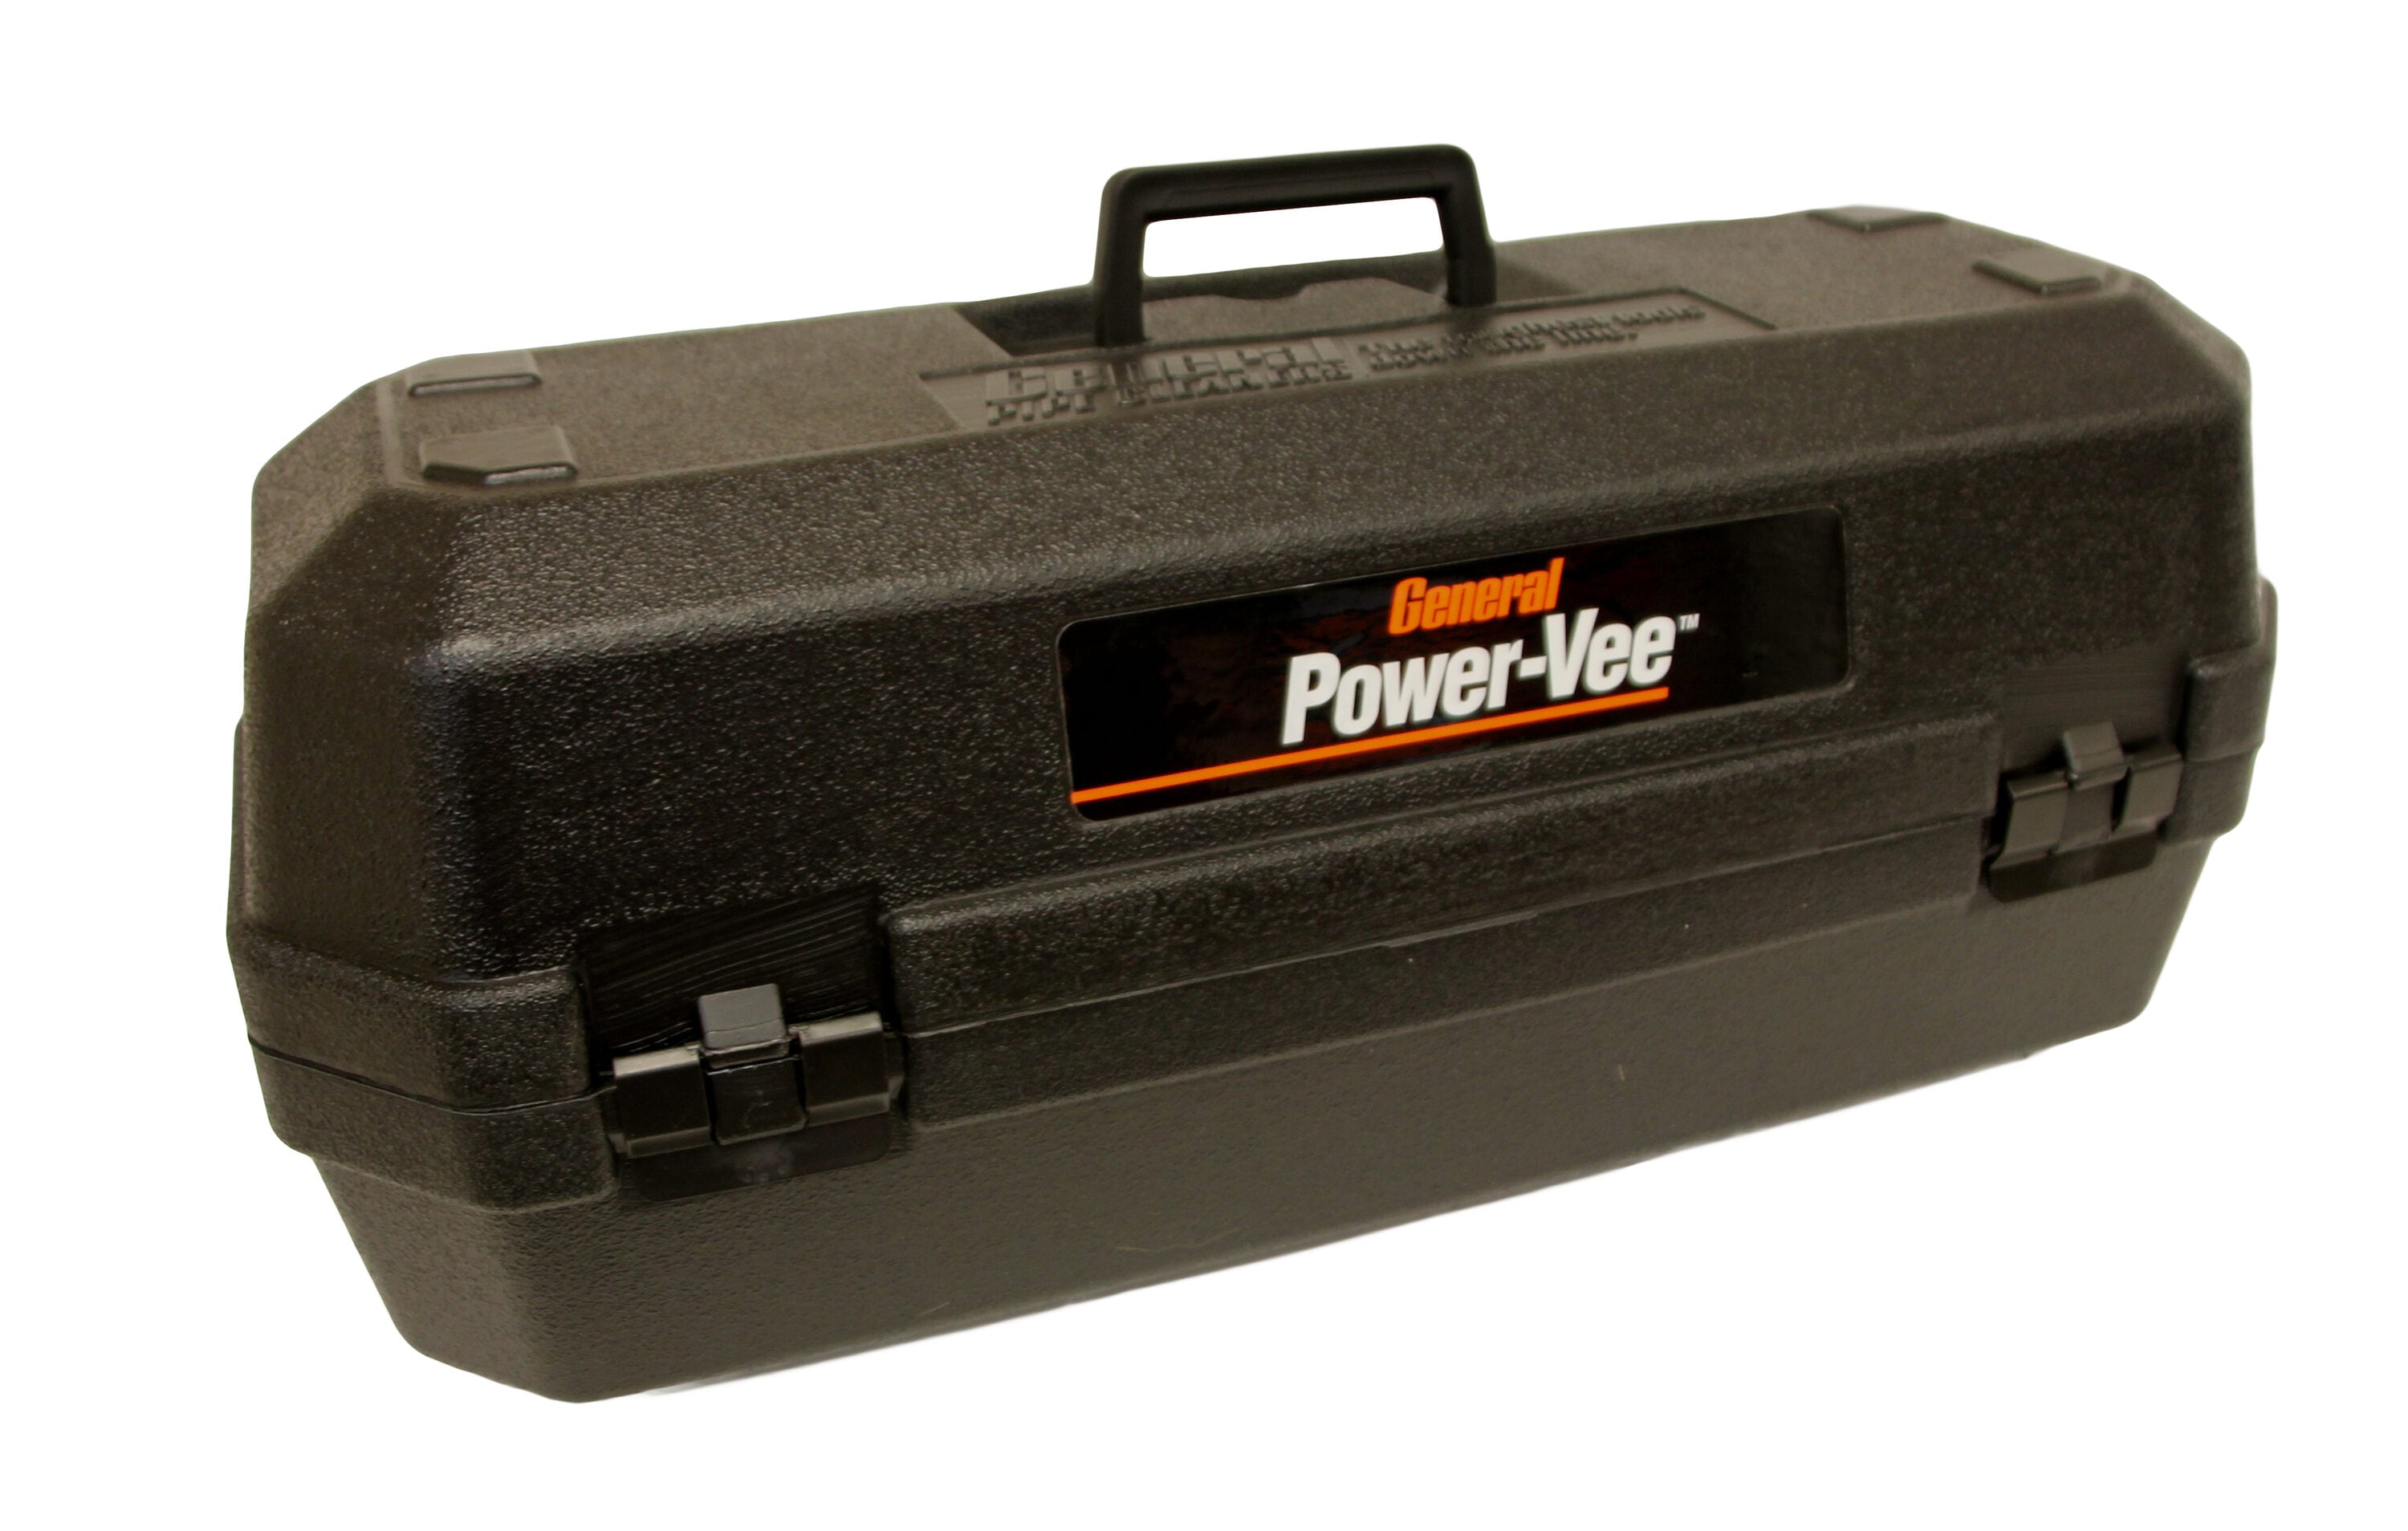 General Pipe Cleaners PVA - Power-Vee Handheld Powered Drain Cleaner Package, 101020